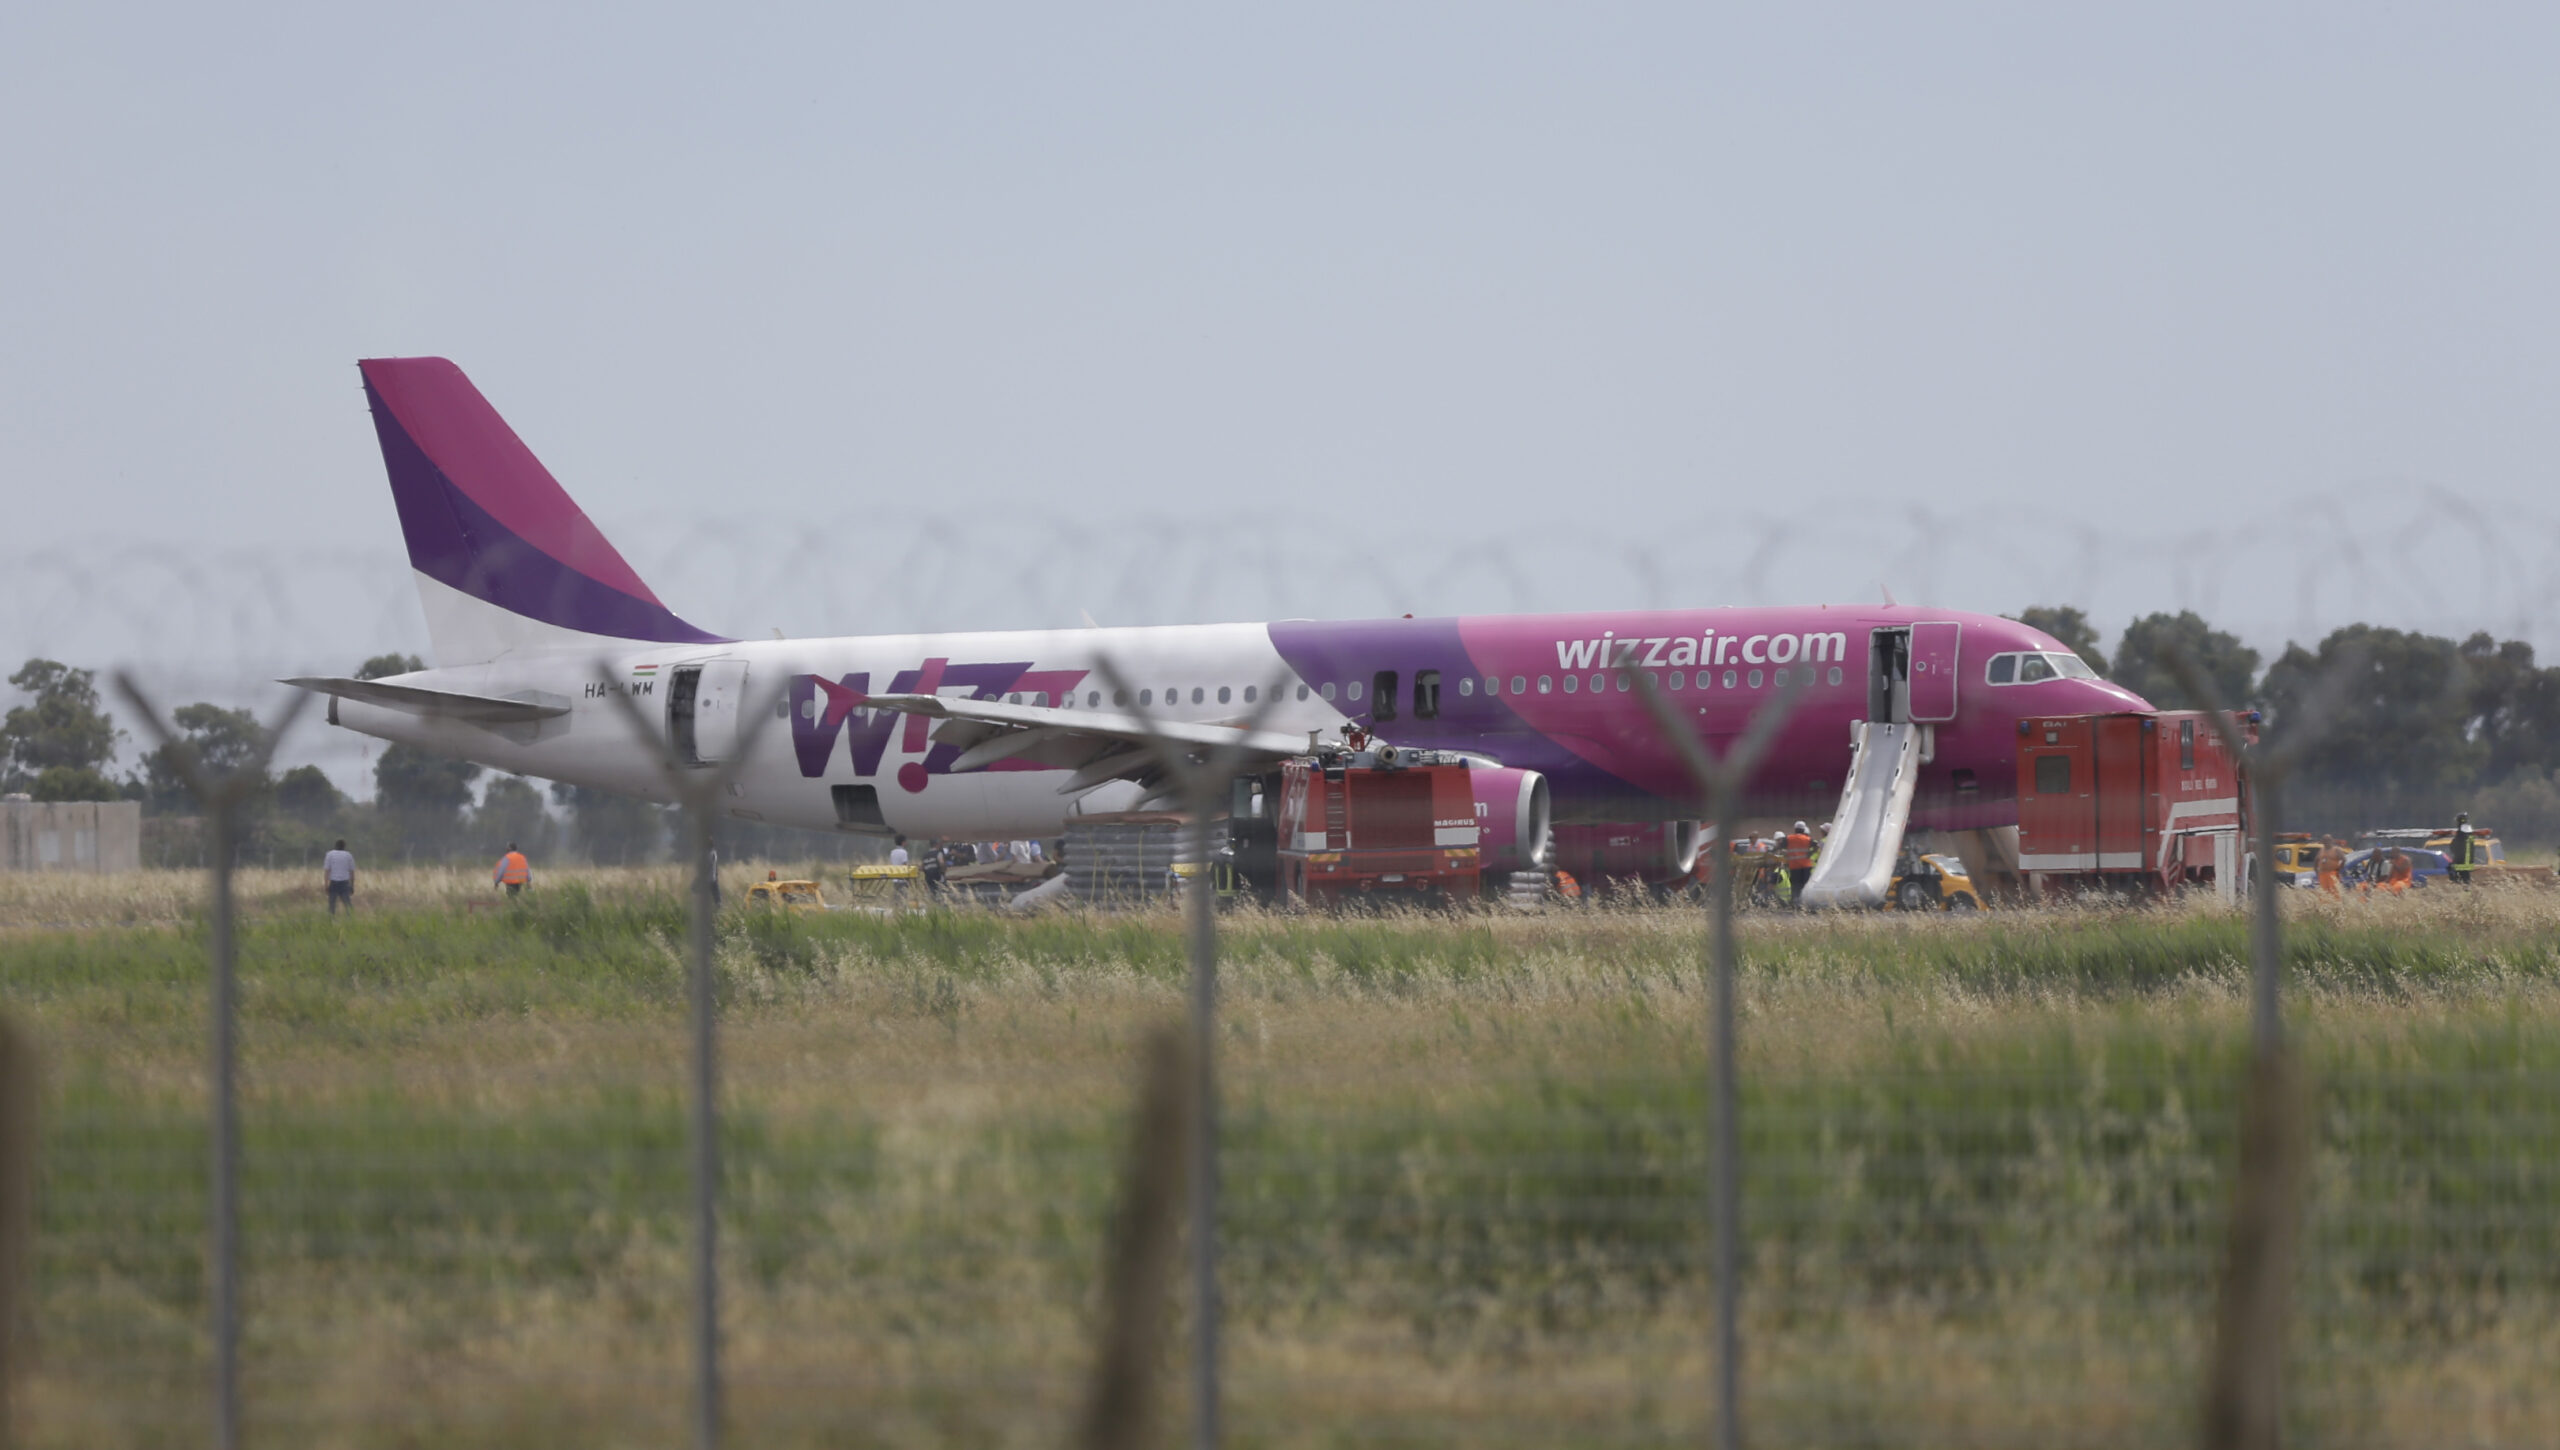 Ουγγαρία: Η Wizz Air αναστέλλει τις πτήσεις προς και από την πρωτεύουσα της Μολδαβίας για «λόγους ασφαλείας»